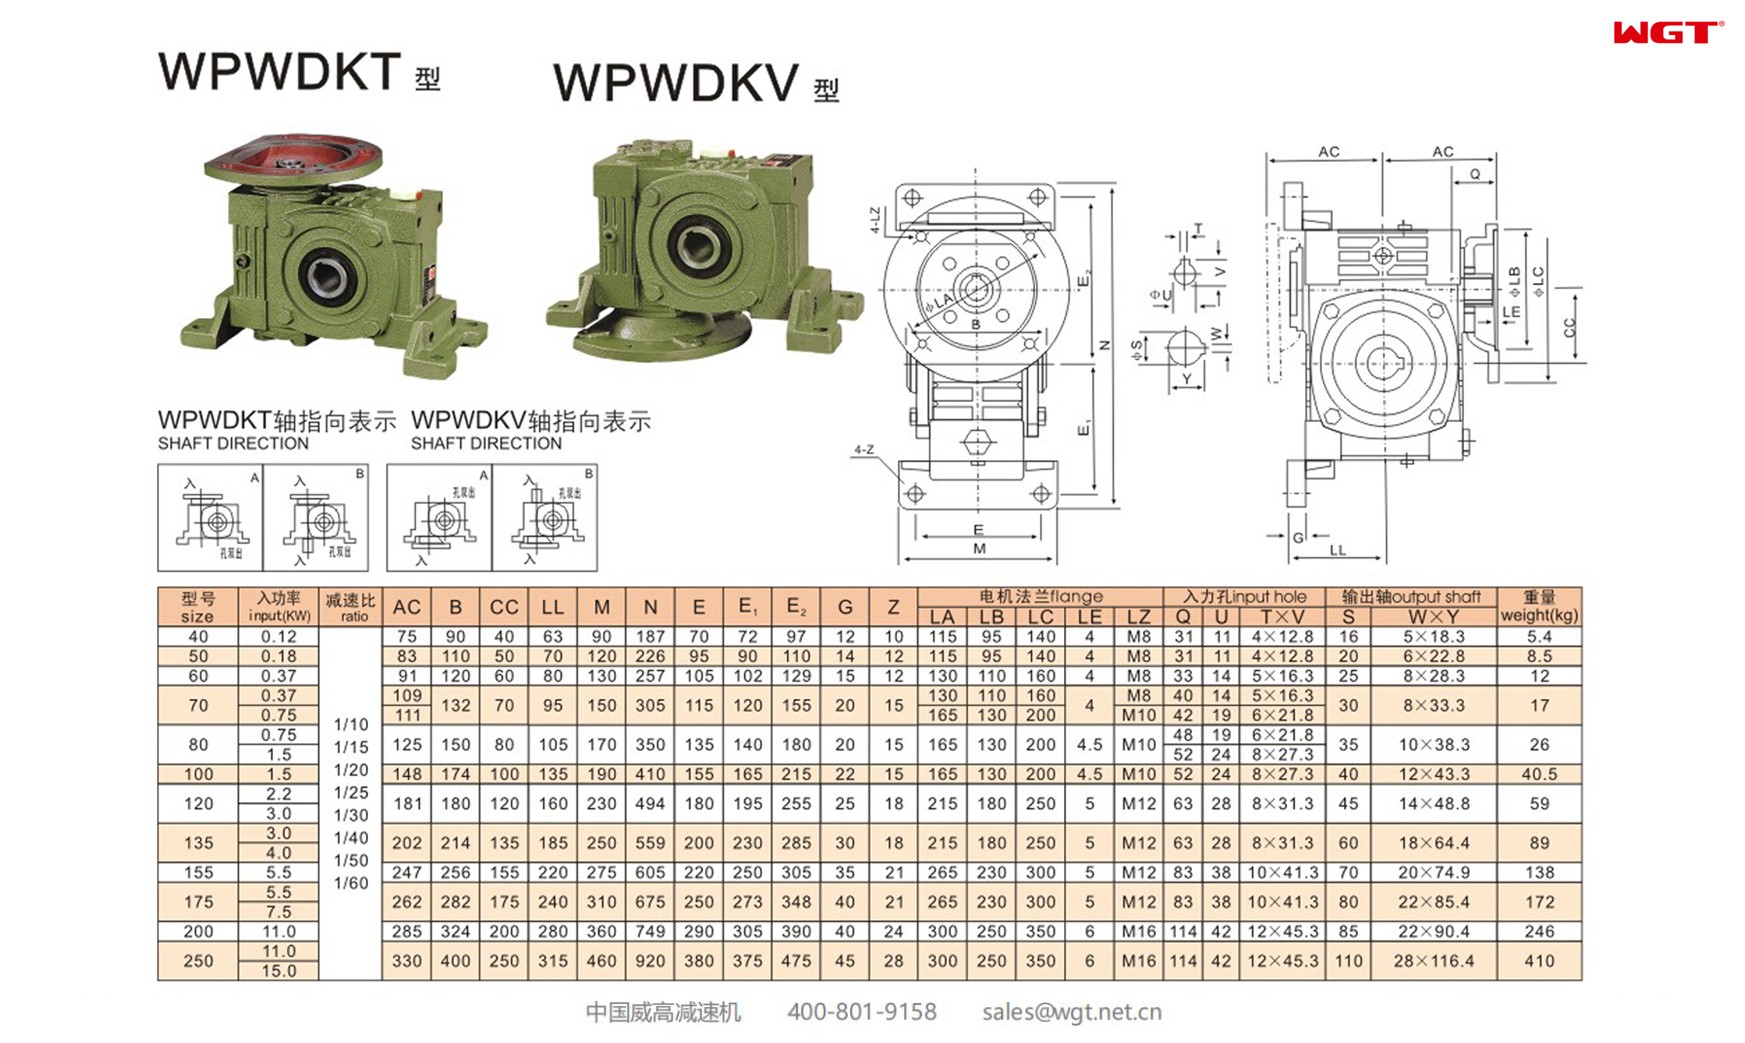 WPWDKV80 worm gear reducer universal speed reducer